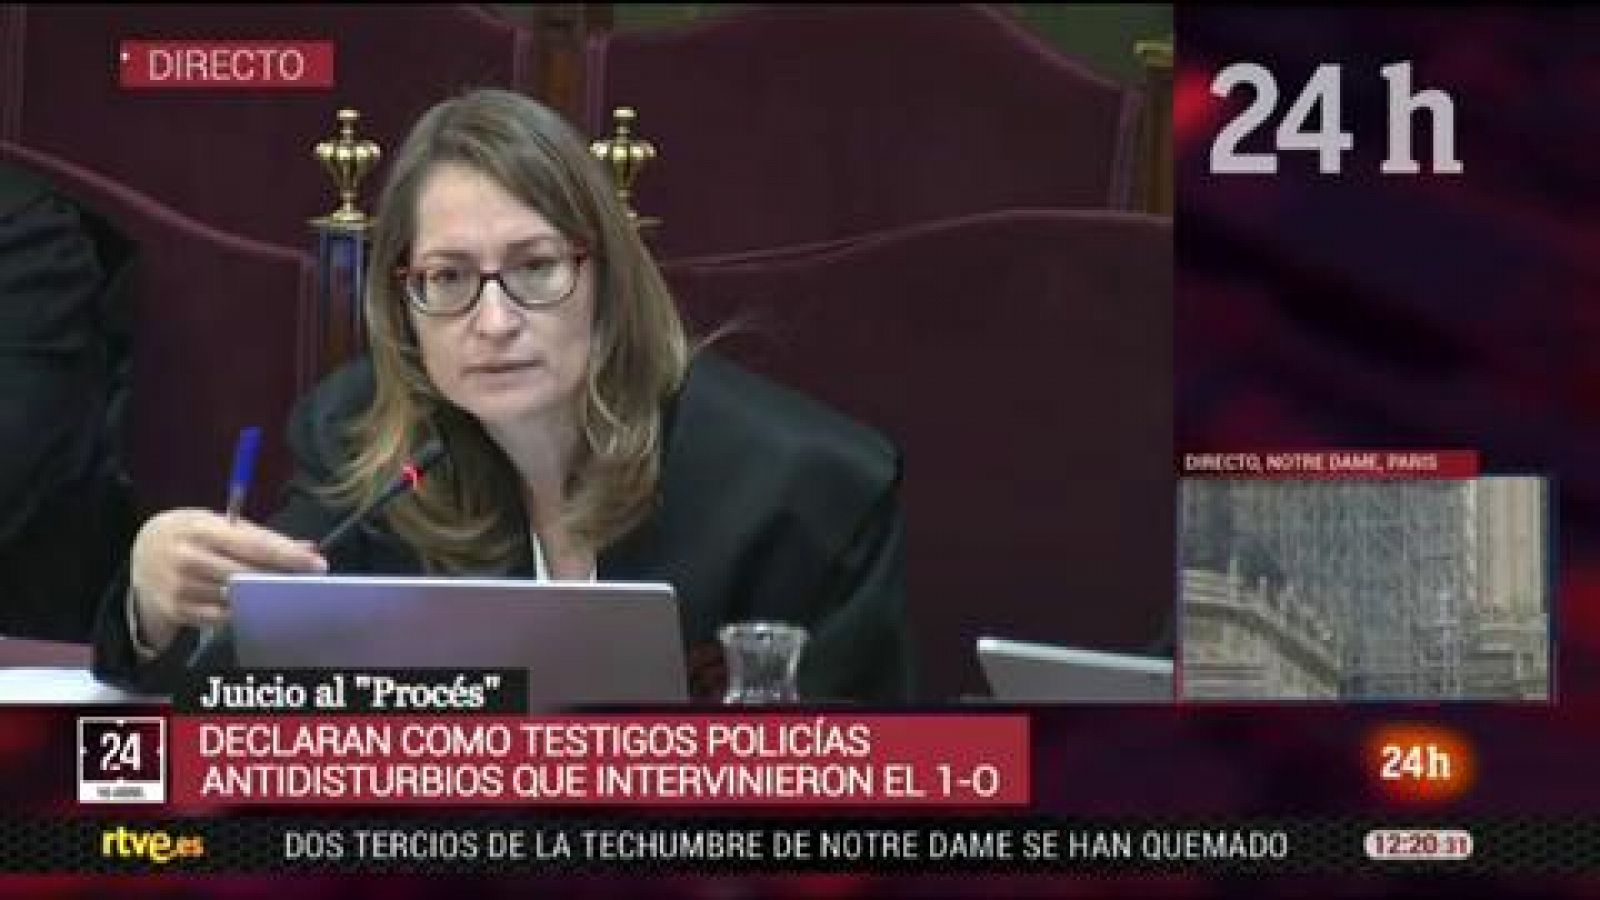 La fiscal Consuelo Madrigal: "Hay momentos en los que parece que estamos en un juicio contra la actuación policial"